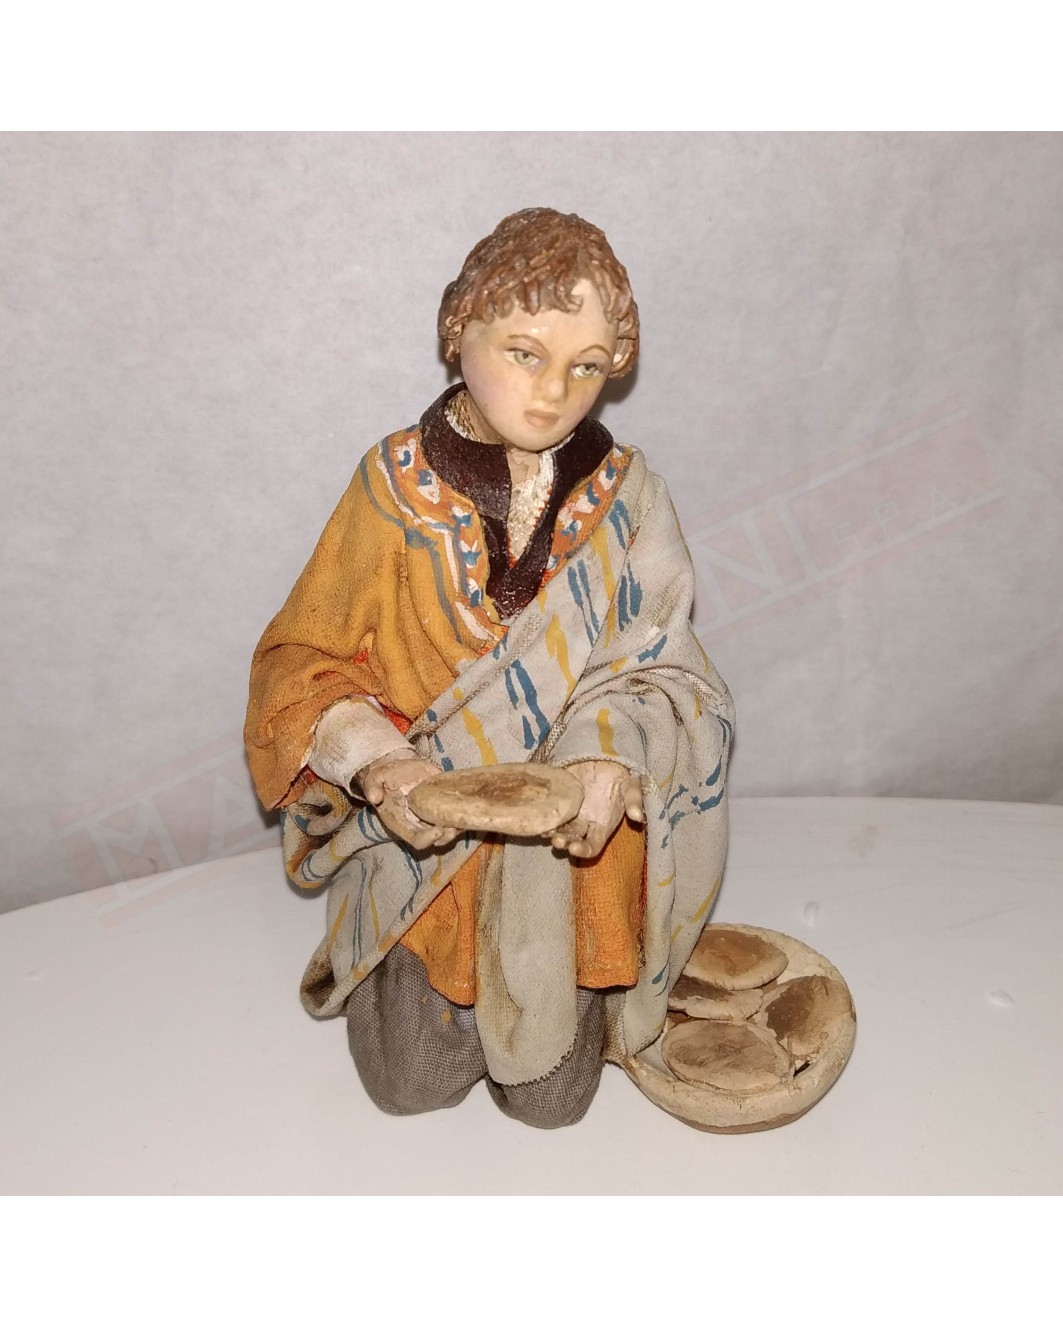 Angela Tripi bimbo in ginocchio che offre pane. Statuina da collezione per presepe cm 18.